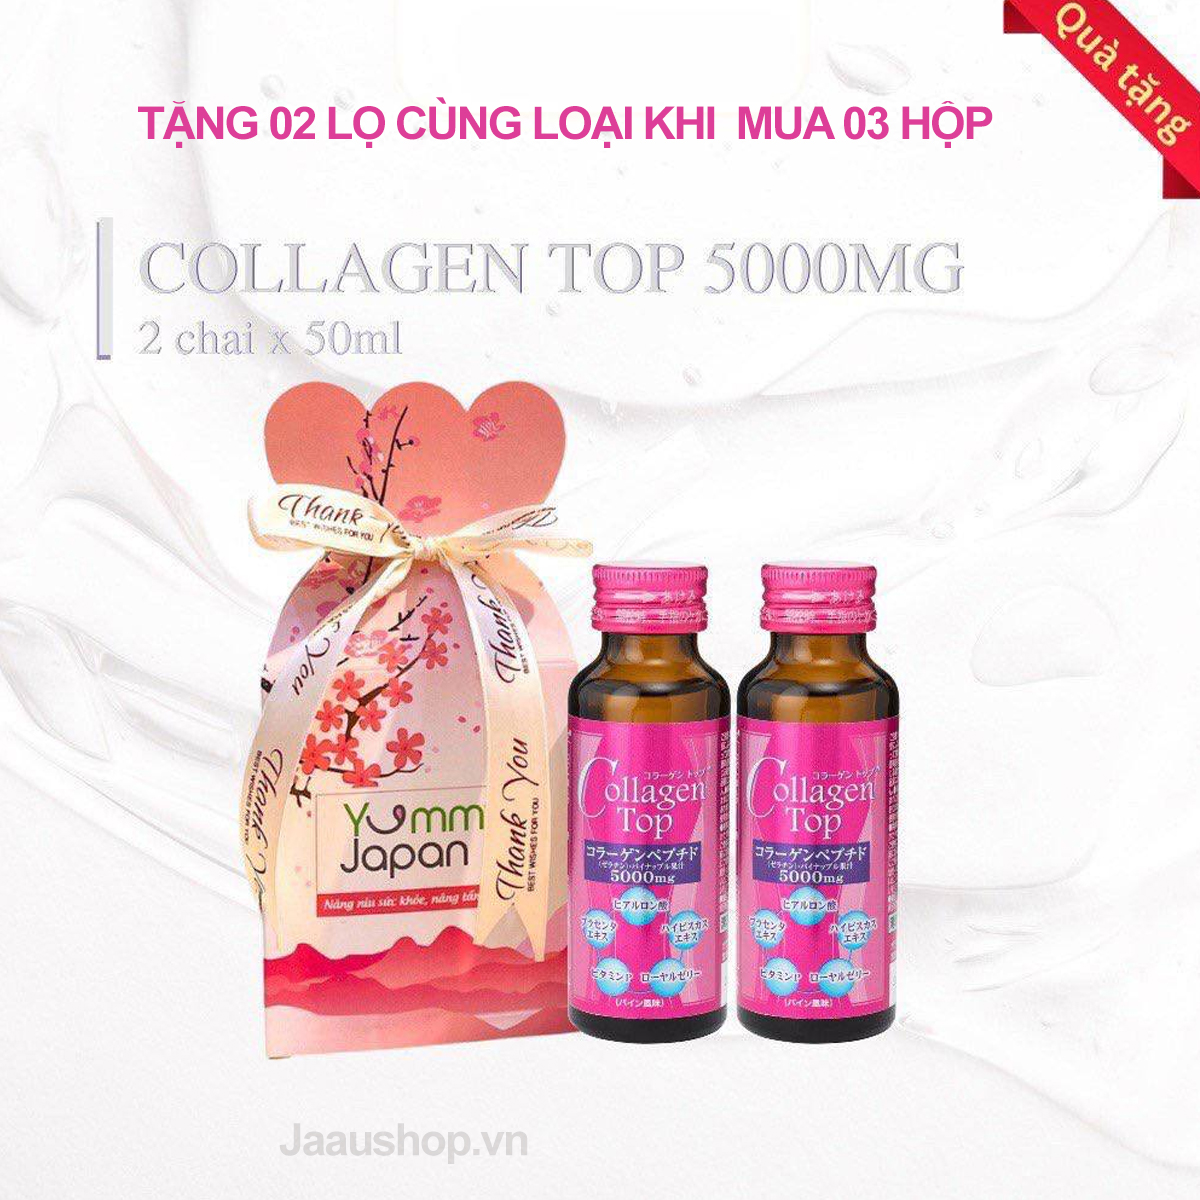 Nước uống Collagen Top SHINNIPPAI Nhật Bản - Hộp 10 chai x 50ml khuyến mãi 1